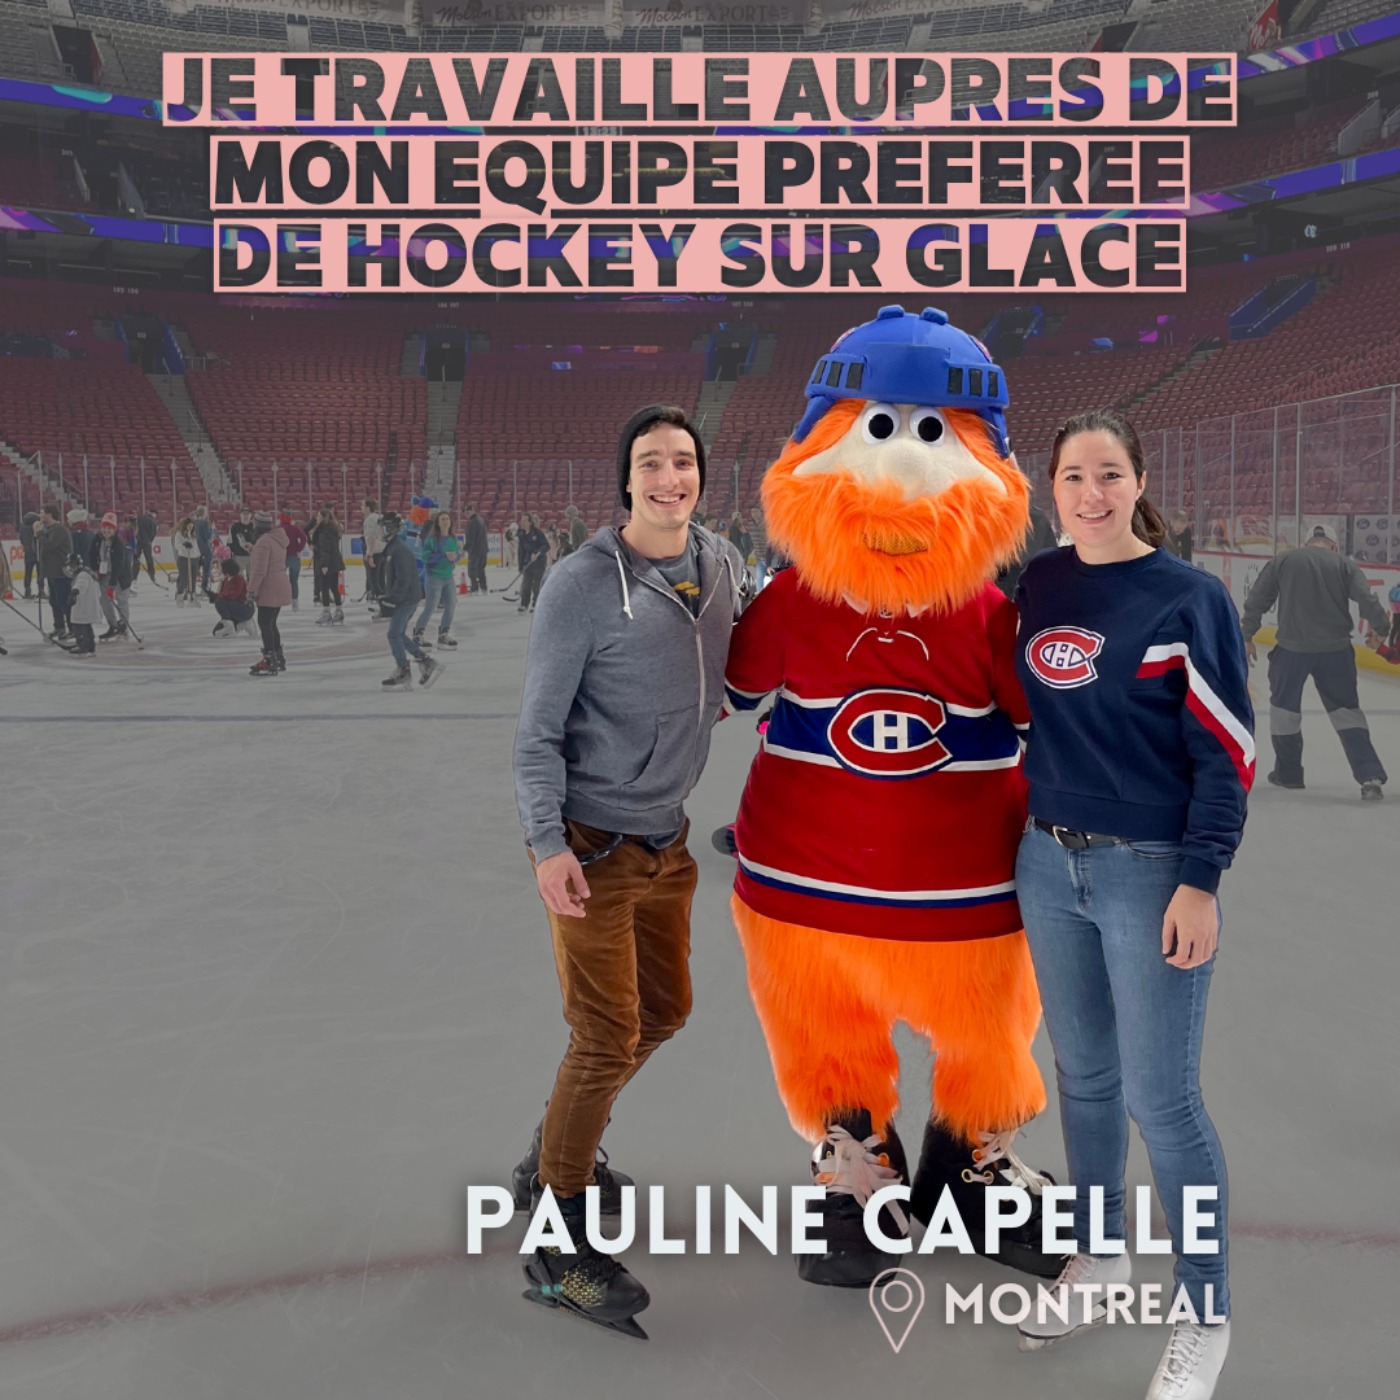 Pauline Capelle (Montréal) : Quitter l’hôtellerie pour travailler avec les Canadiens de Montréal